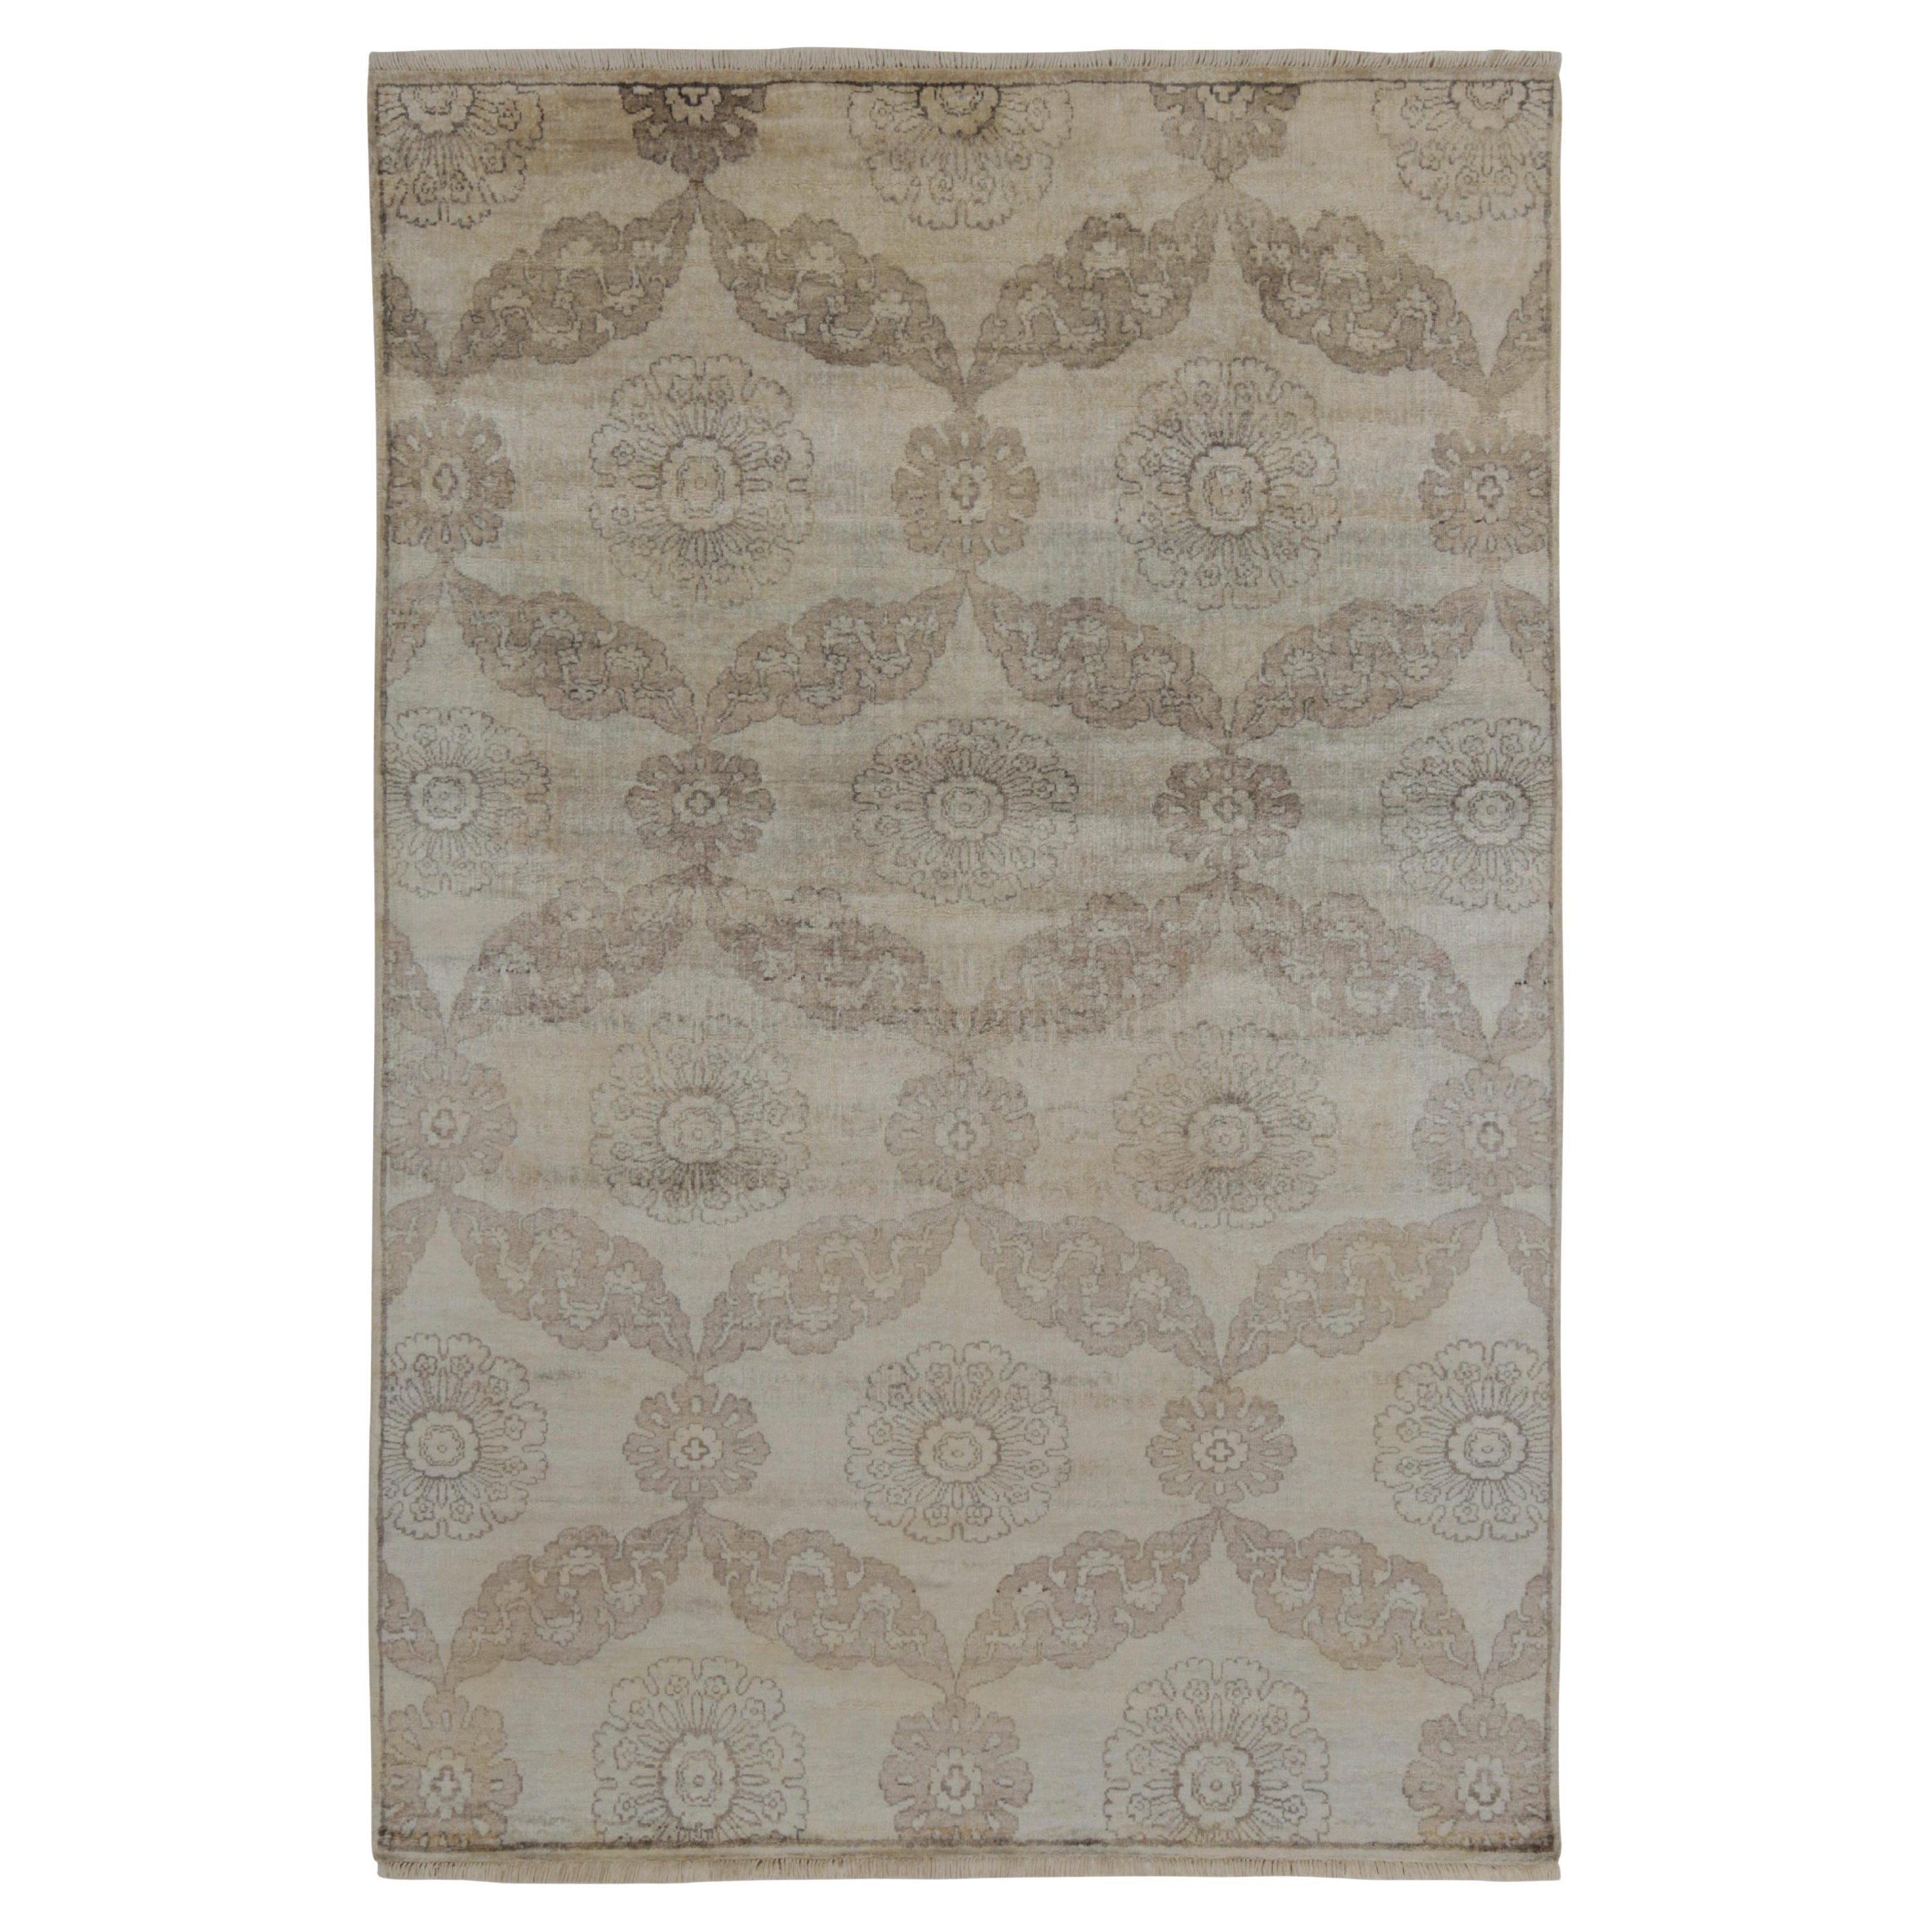 Rug & Kilim's Classic Style Teppich in Beige-Braun und Silber-Grau mit Blumenmustern